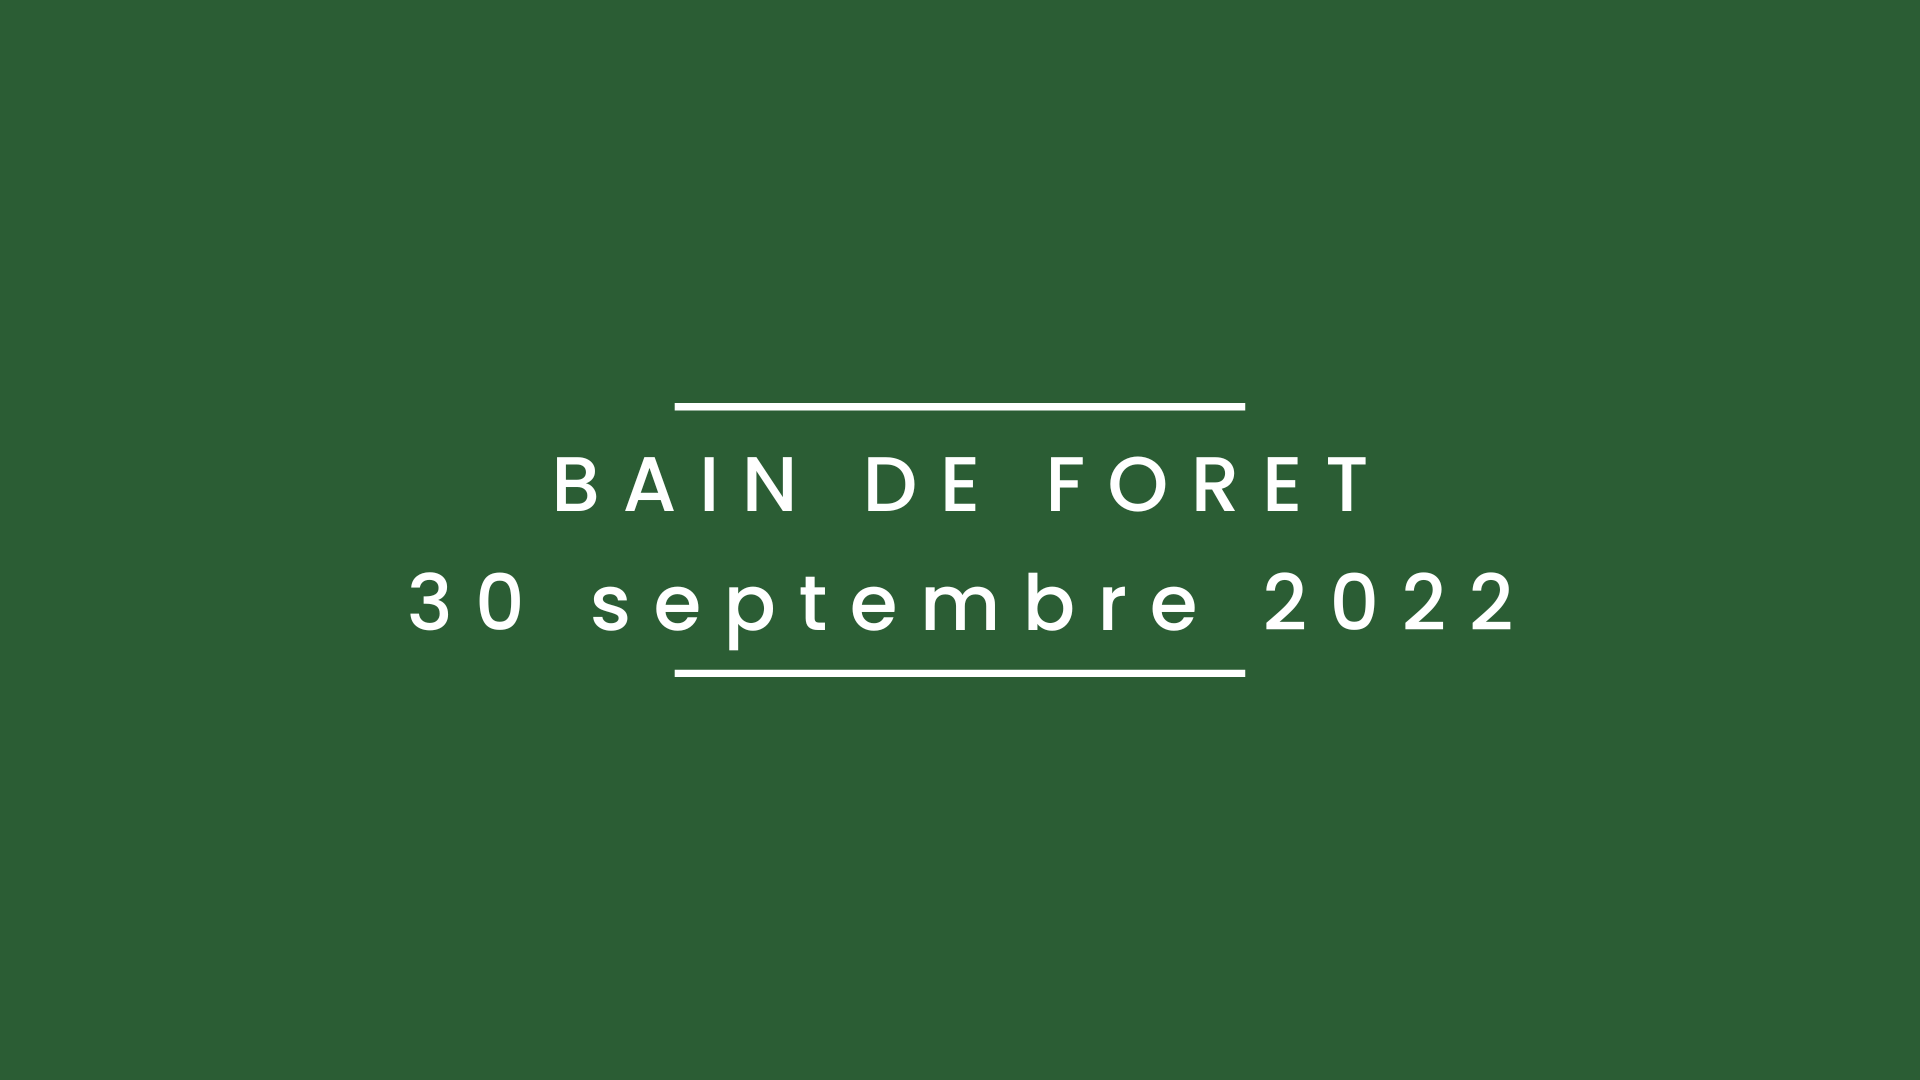 Bain de forêt 30 septembre 2022